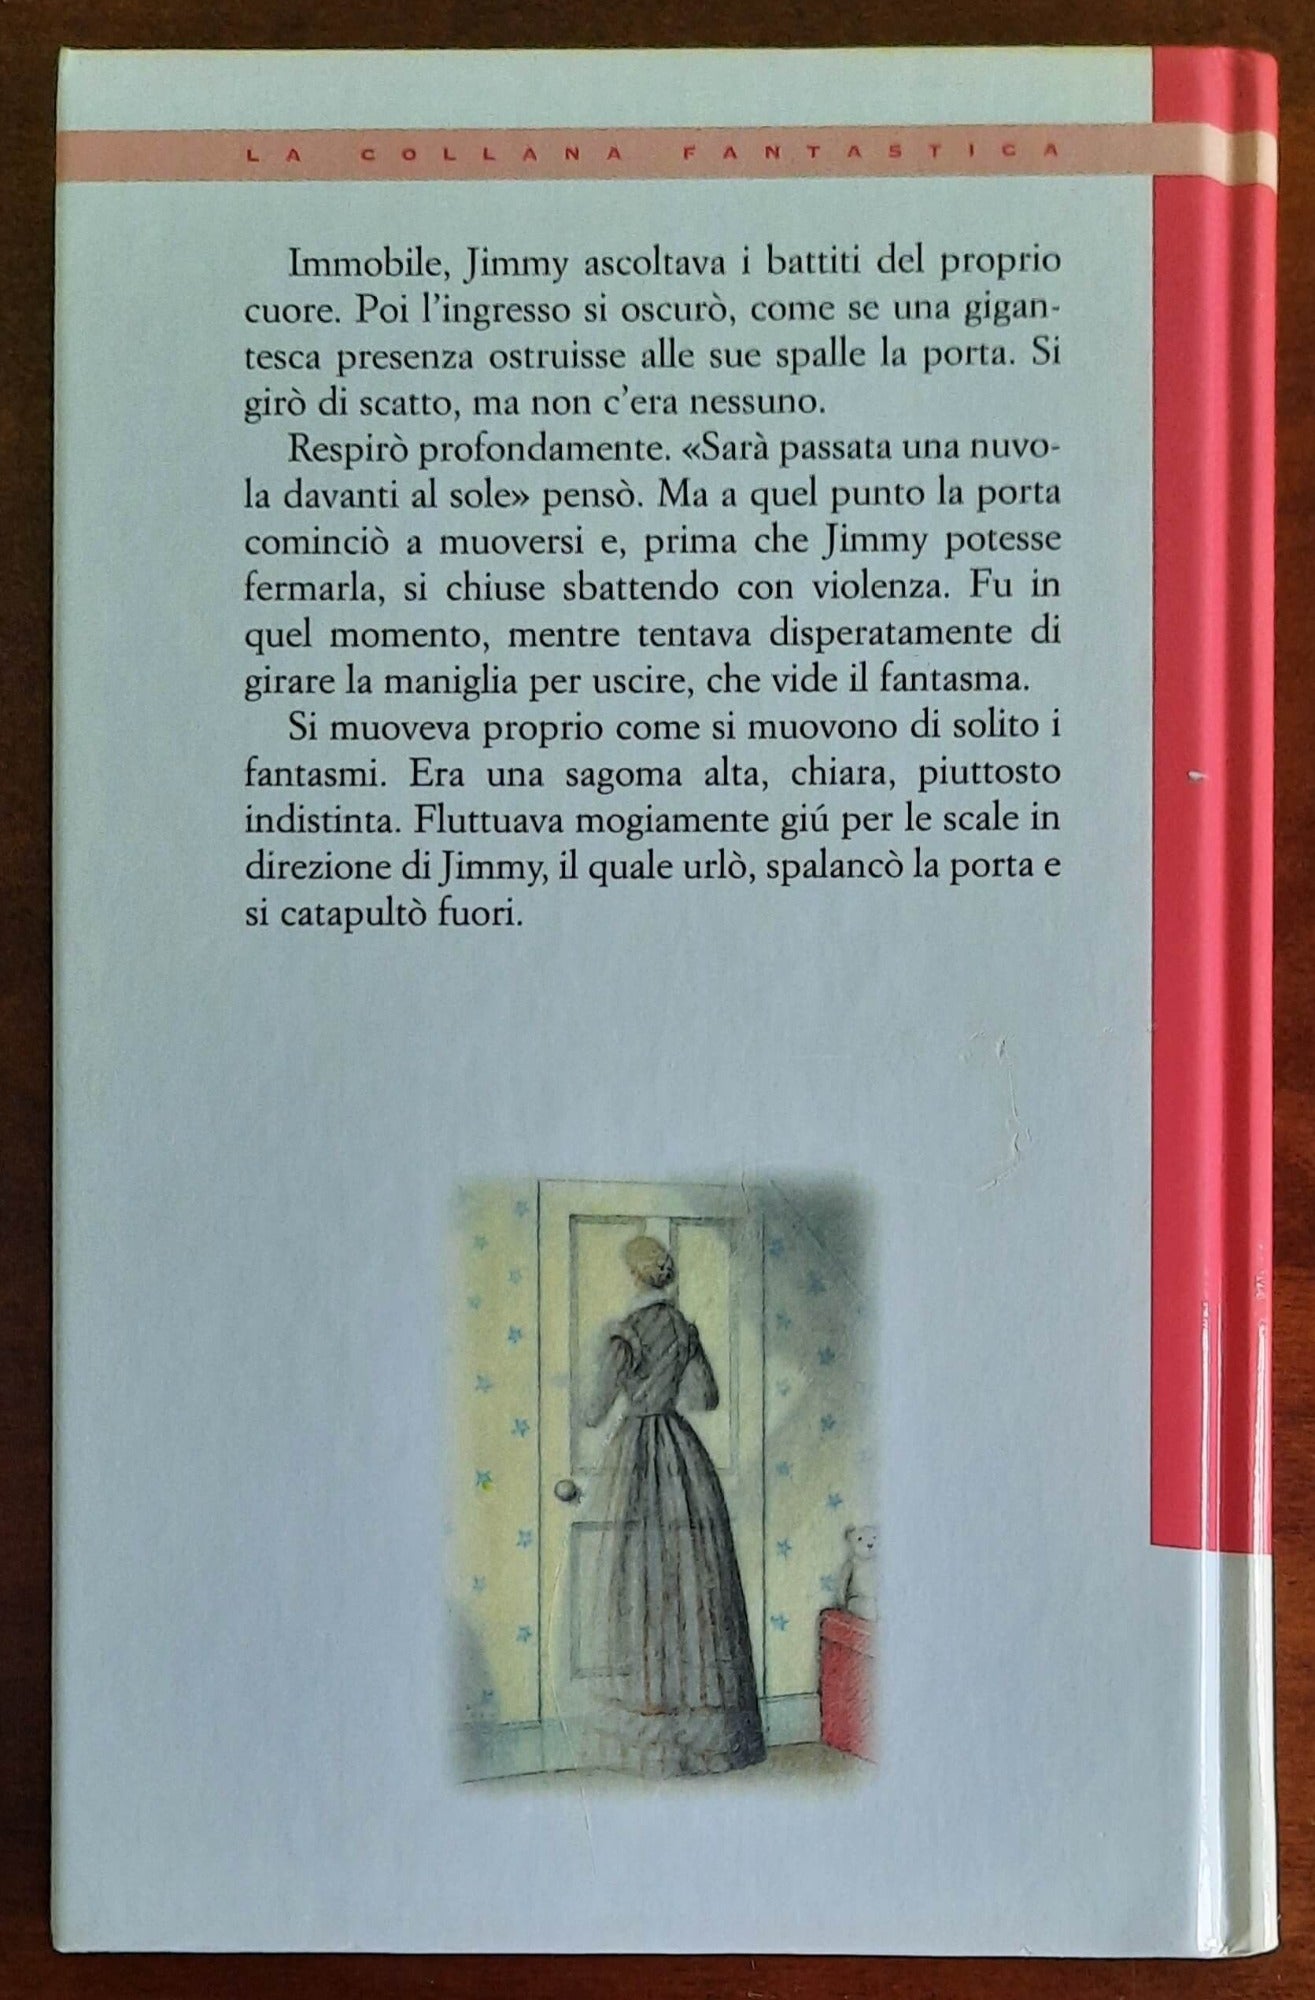 Storie di fantasmi - Edizioni El - Einaudi Ragazzi